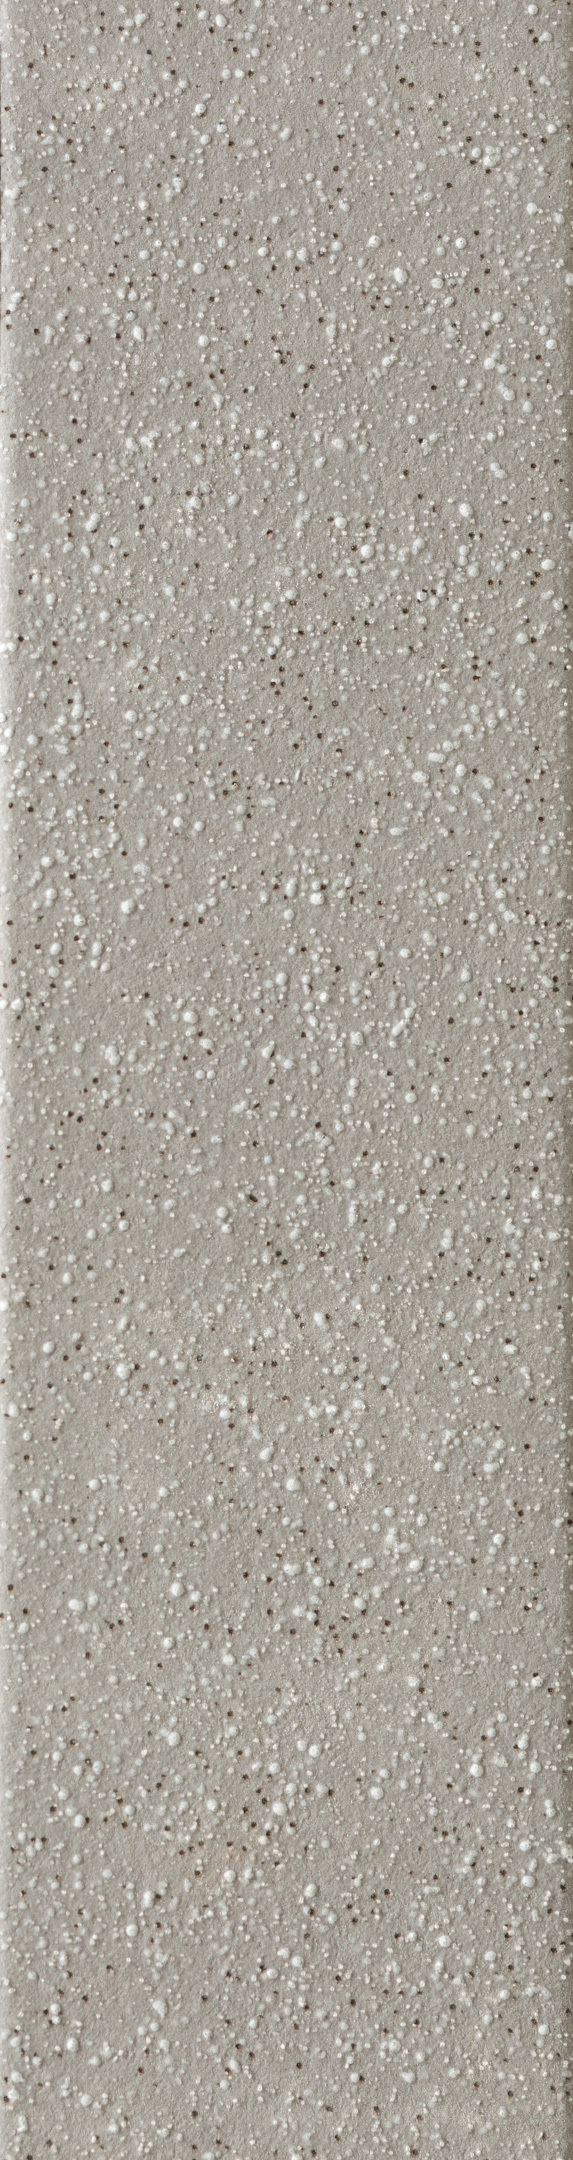 Клинкерная плитка Керамин Мичиган 1 серая 245х65х7 мм (34 шт.=0,54 кв.м) плитка клинкерная керамин мичиган 1 серый 24 5x6 5 см 34 шт 0 54 м2